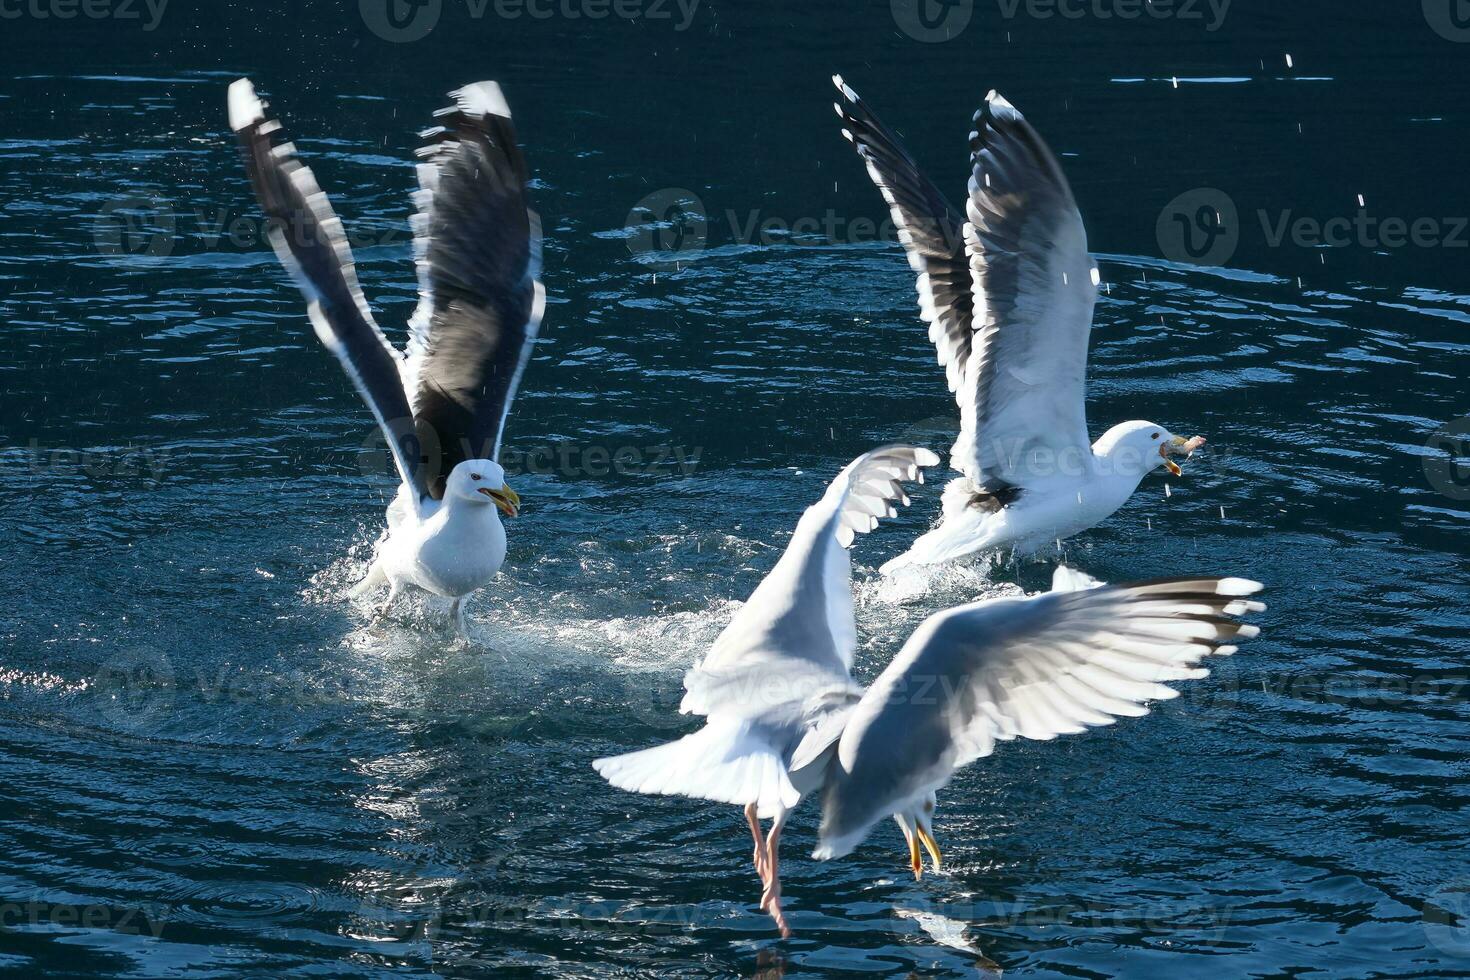 gaviotas lucha terminado comida en Noruega. agua gotas chapoteo. alimentación envidia entre aves marinas foto